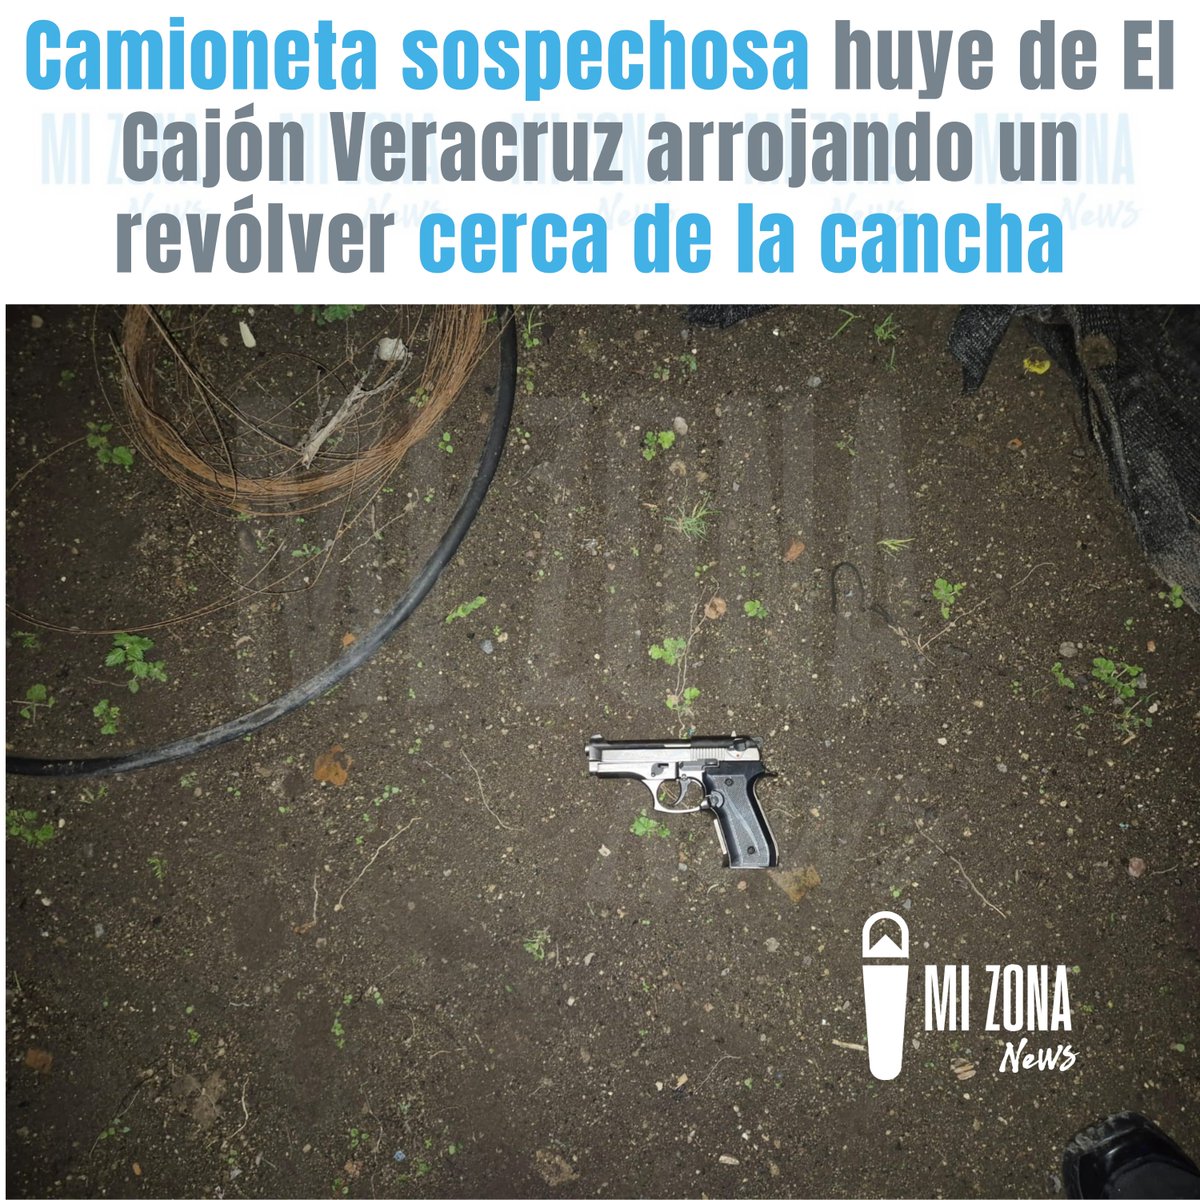 Una camioneta sospechosa que circulaba por #ElCajónVeracruz en #Tanicuchí huyó arrojando un revólver al ver a la Policía. #LatacungaRural #Latacunga 👇

facebook.com/photo/?fbid=42…